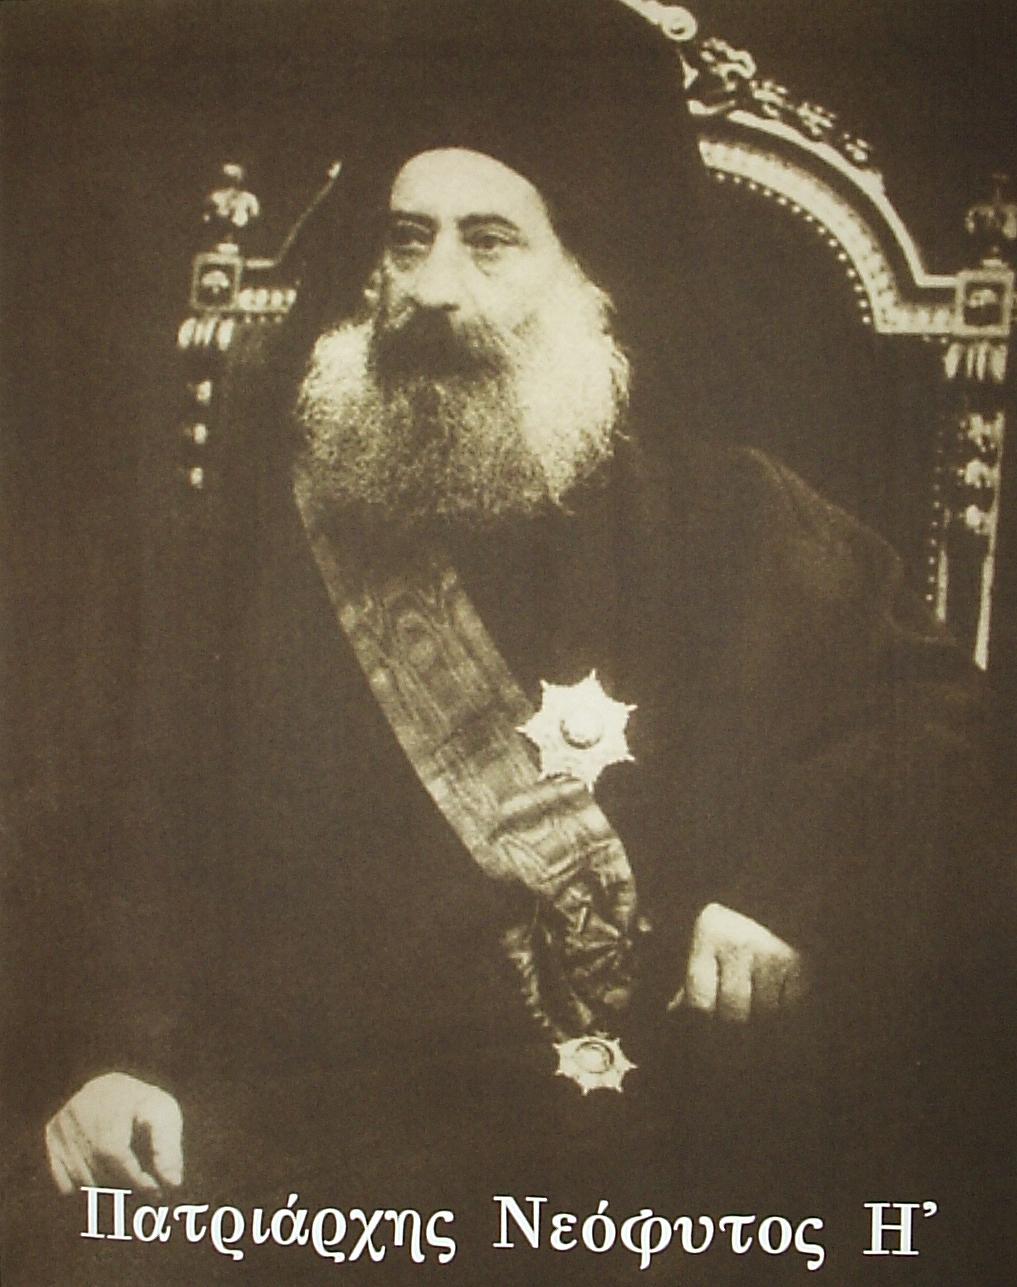 Ο Νεόφυτος Η' (κατά κόσμον Ιωακείμ Παπακωνσταντίνου1832-1909) ήταν Πατριάρχης Κωνσταντινουπόλεως από το 1891 ως το 1894.